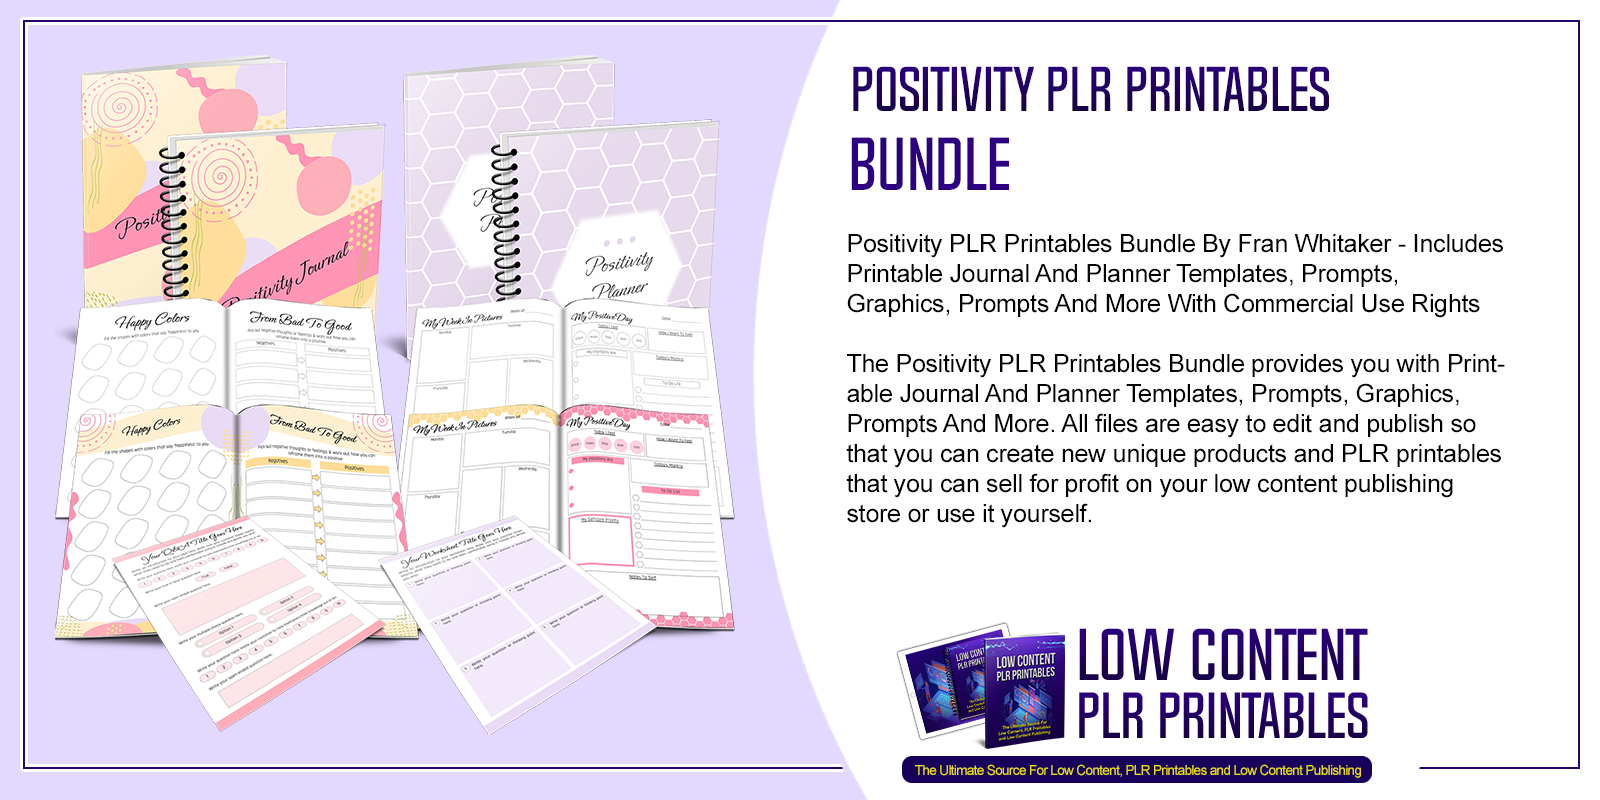 Positivity PLR Printables Bundle